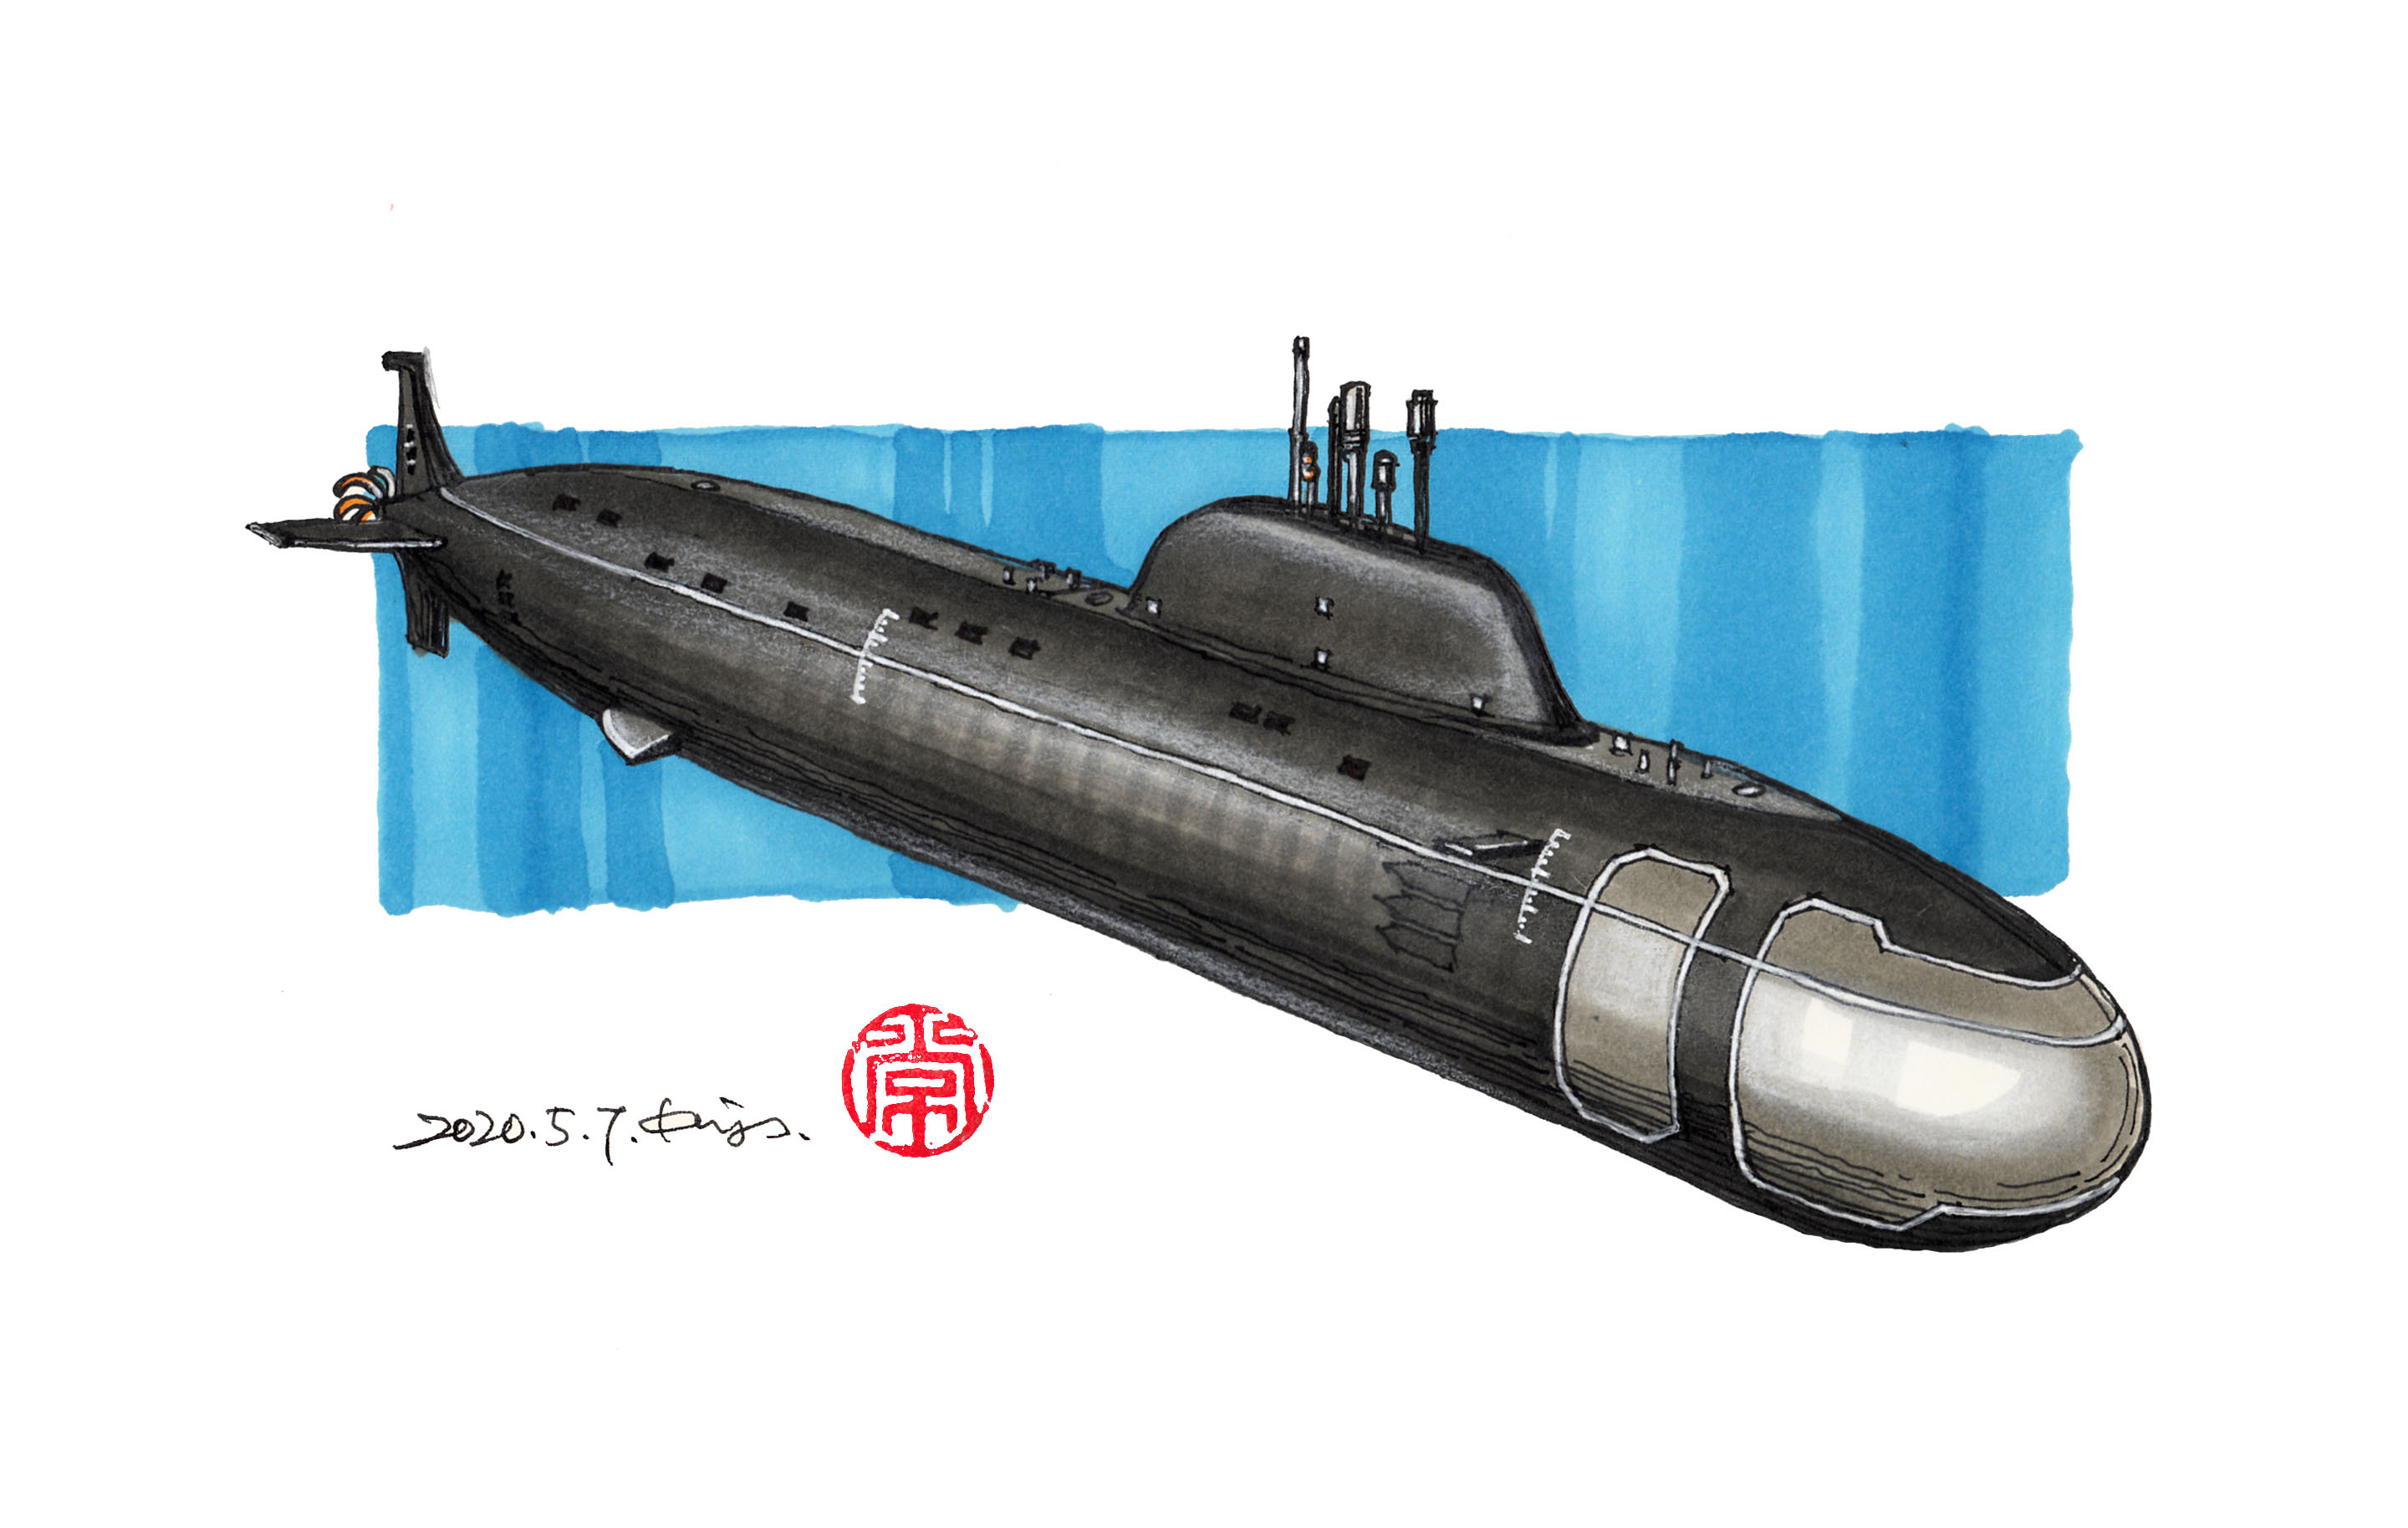 军用的潜水艇怎么画图片